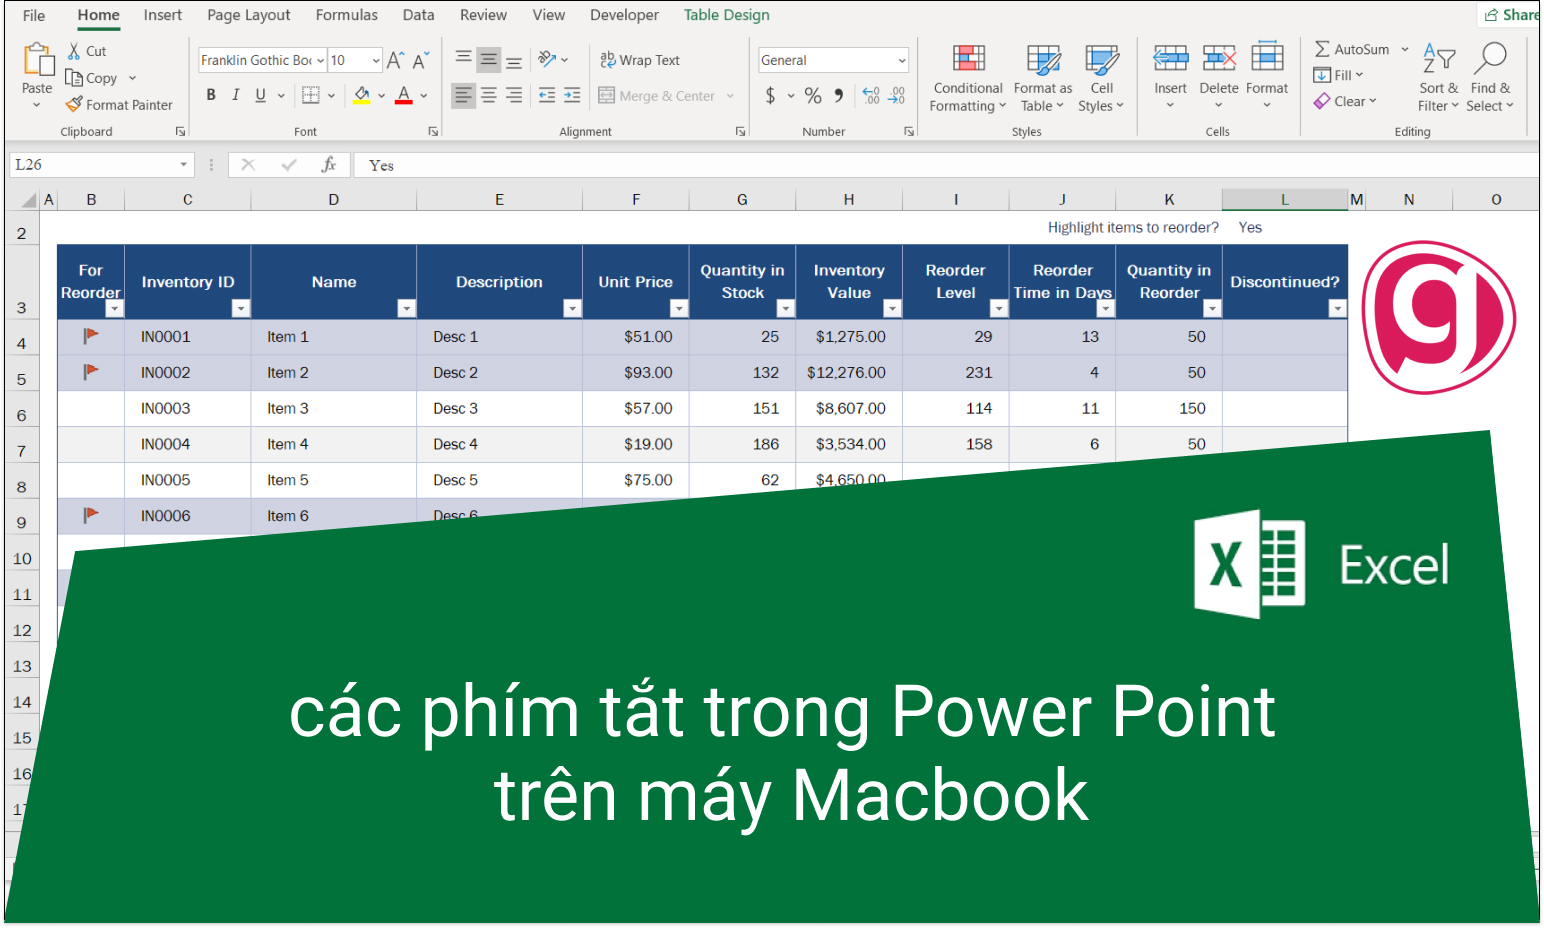 Powerpoint trên Macbook khác gì so với trên Window và cách sử dụng nó?
